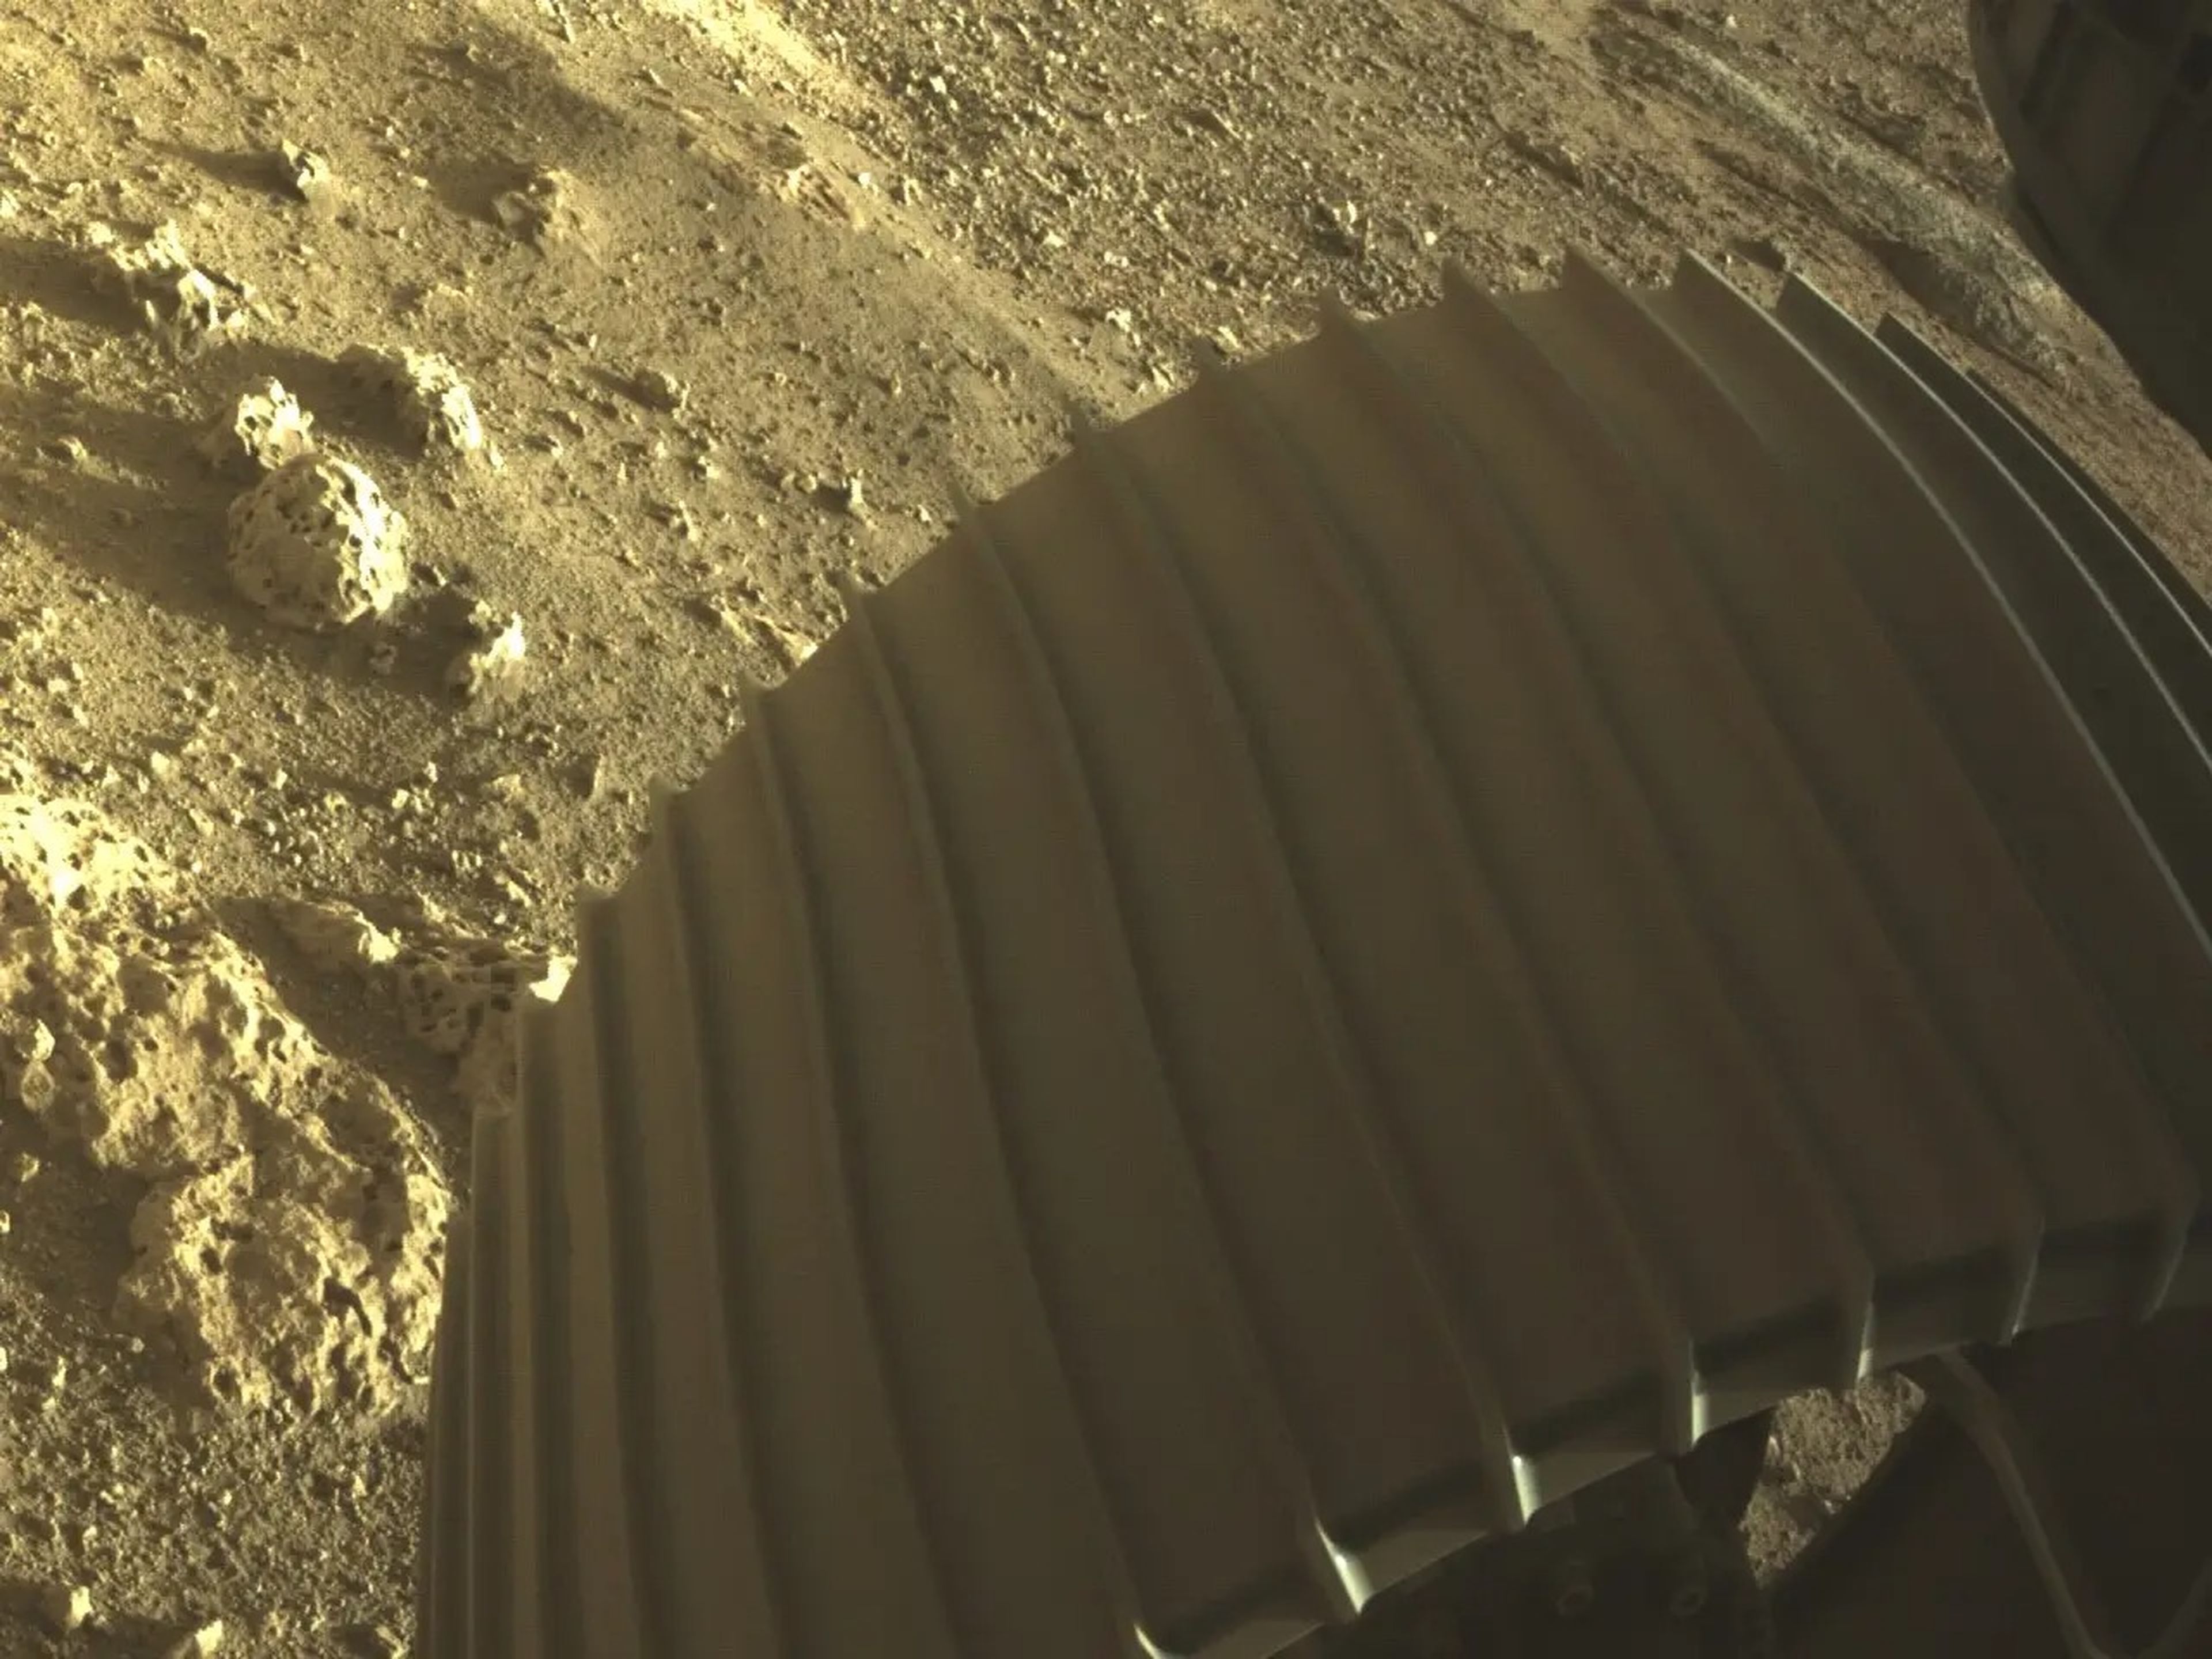 Una de las cámaras de peligro en color del Perseverance (Hazcams) capturó esta imagen de una de las 6 ruedas de aluminio del rover, después de su aterrizaje el 18 de febrero de 2021.